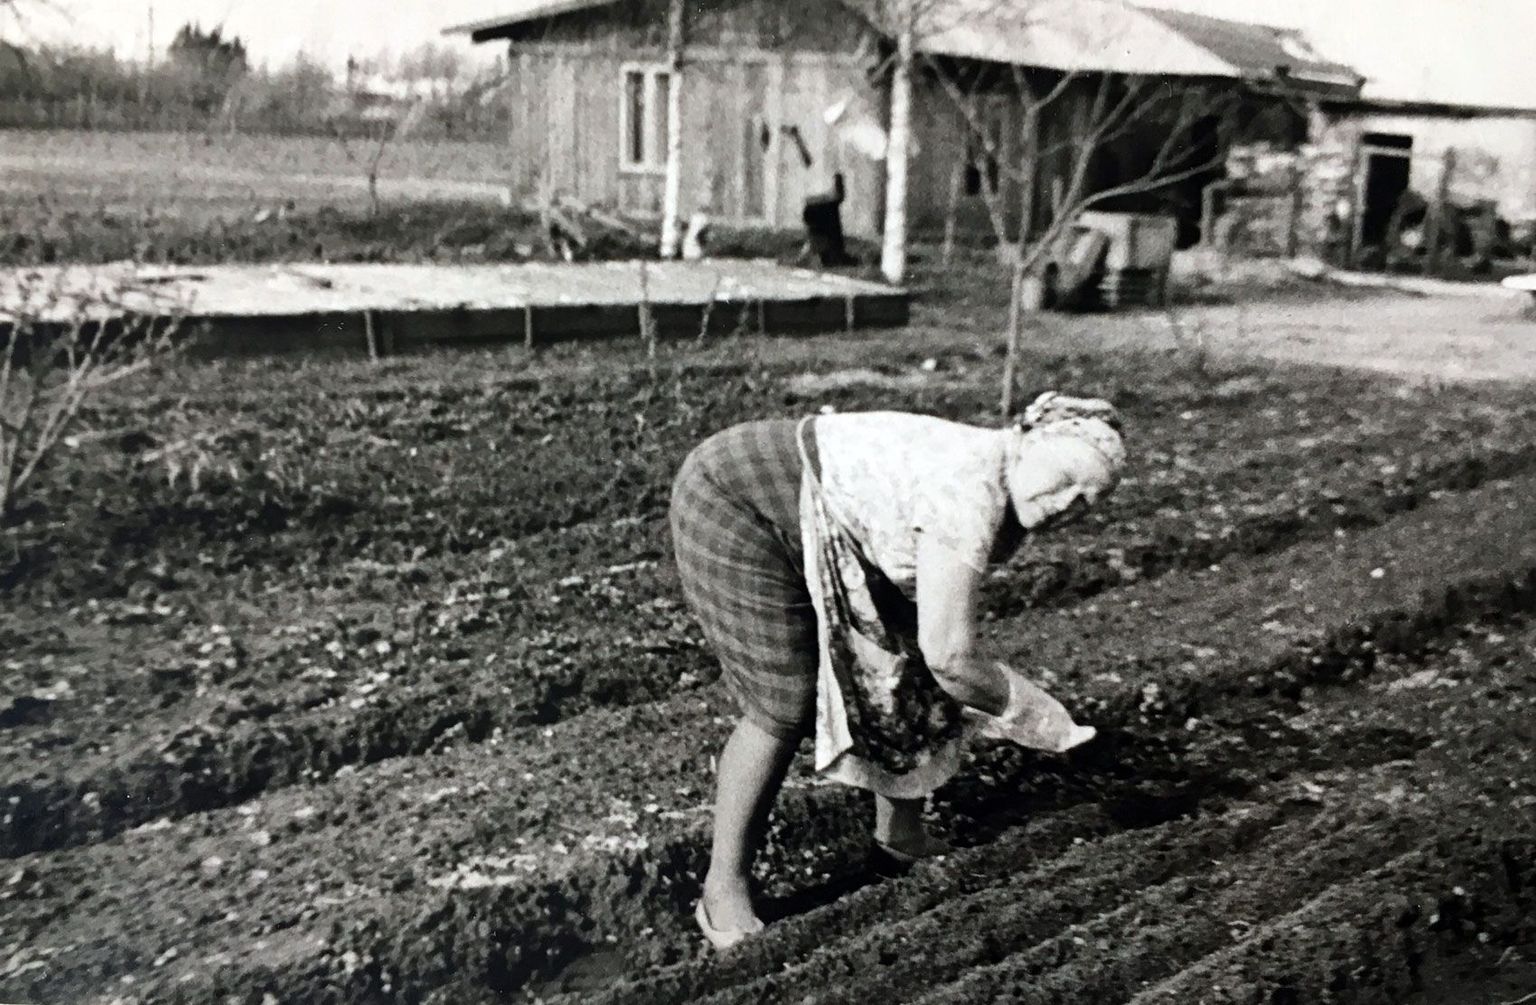 Hilda Laurson kasvatas kolhoositöö
kõrvalt aiasaadusi, et nende müügiga
üksi viit last toita ja koolitada.